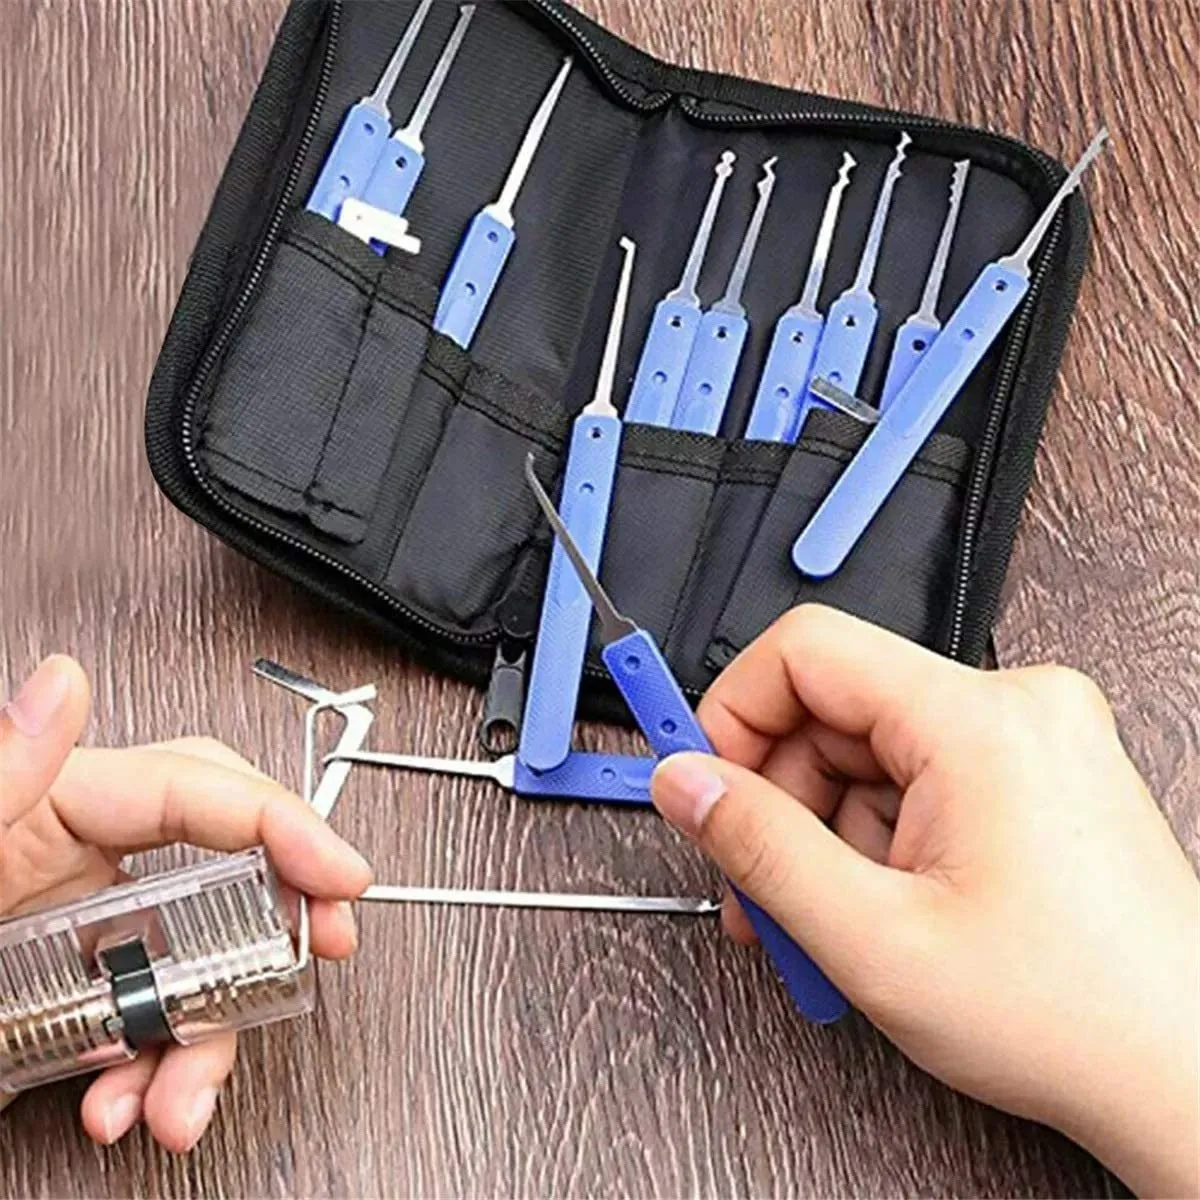 18 ferramentas de serralheiro transparente kit de bloqueio de prática com extrator de chave quebrada ferramenta de remoção de ganchos palhetas de bloqueio de hardware locksmit271v